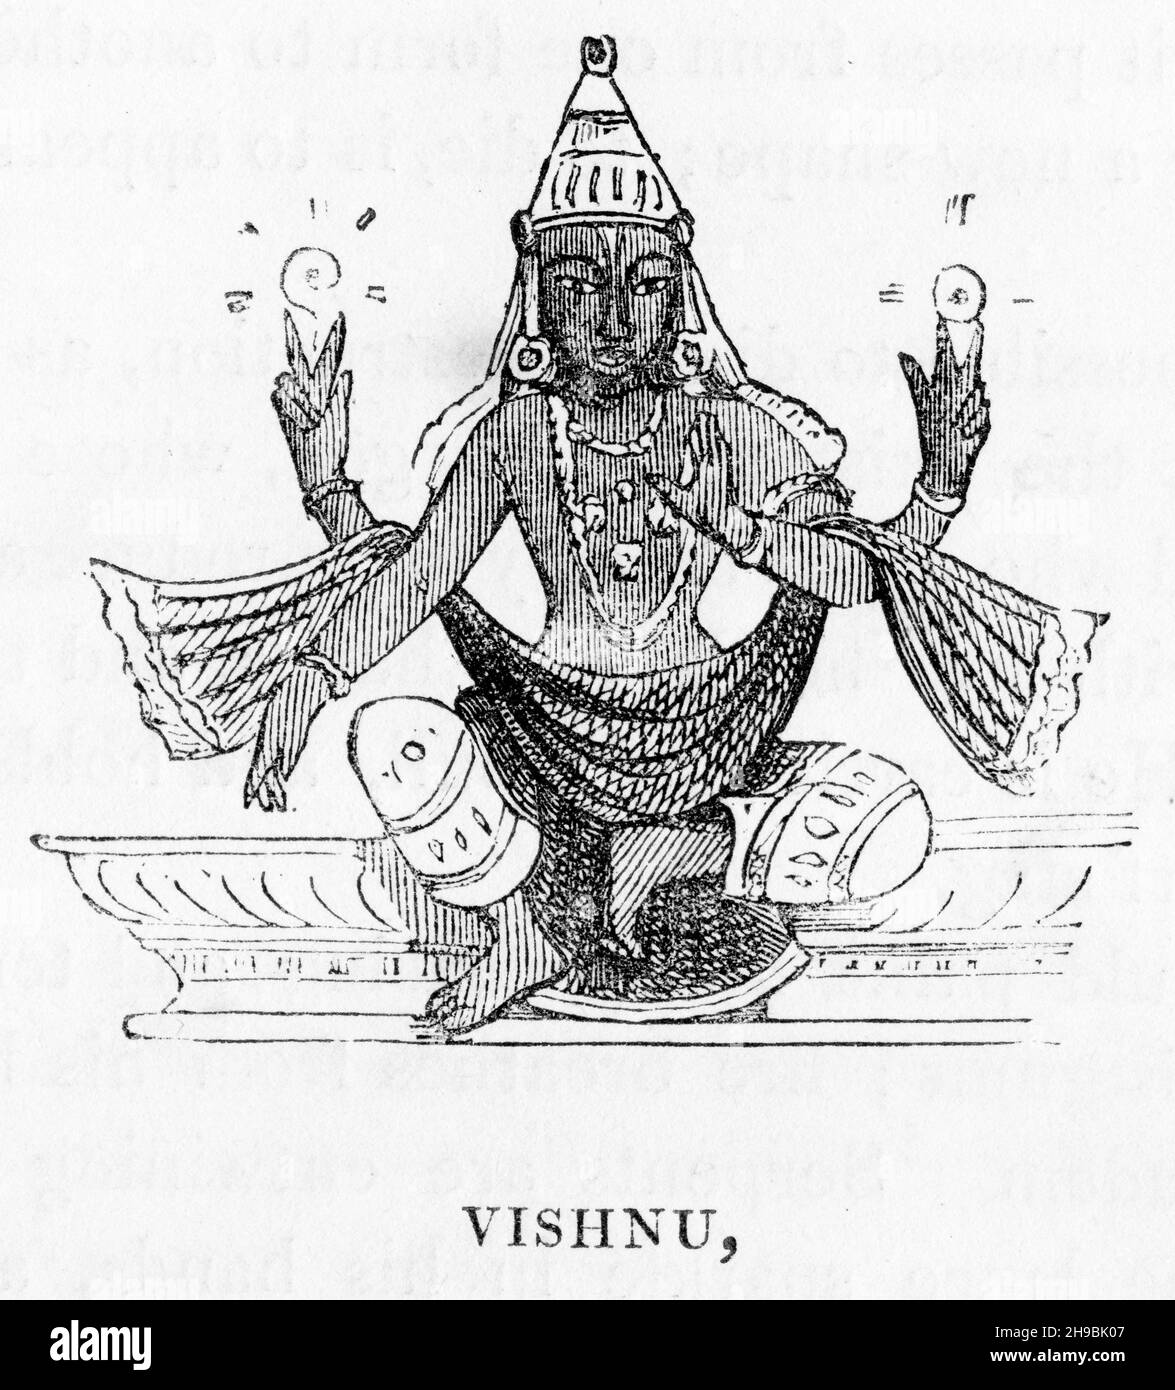 Engraving of the Hindu god Vishnu. From a 19th century publicationon heathen mythology Stock Photo